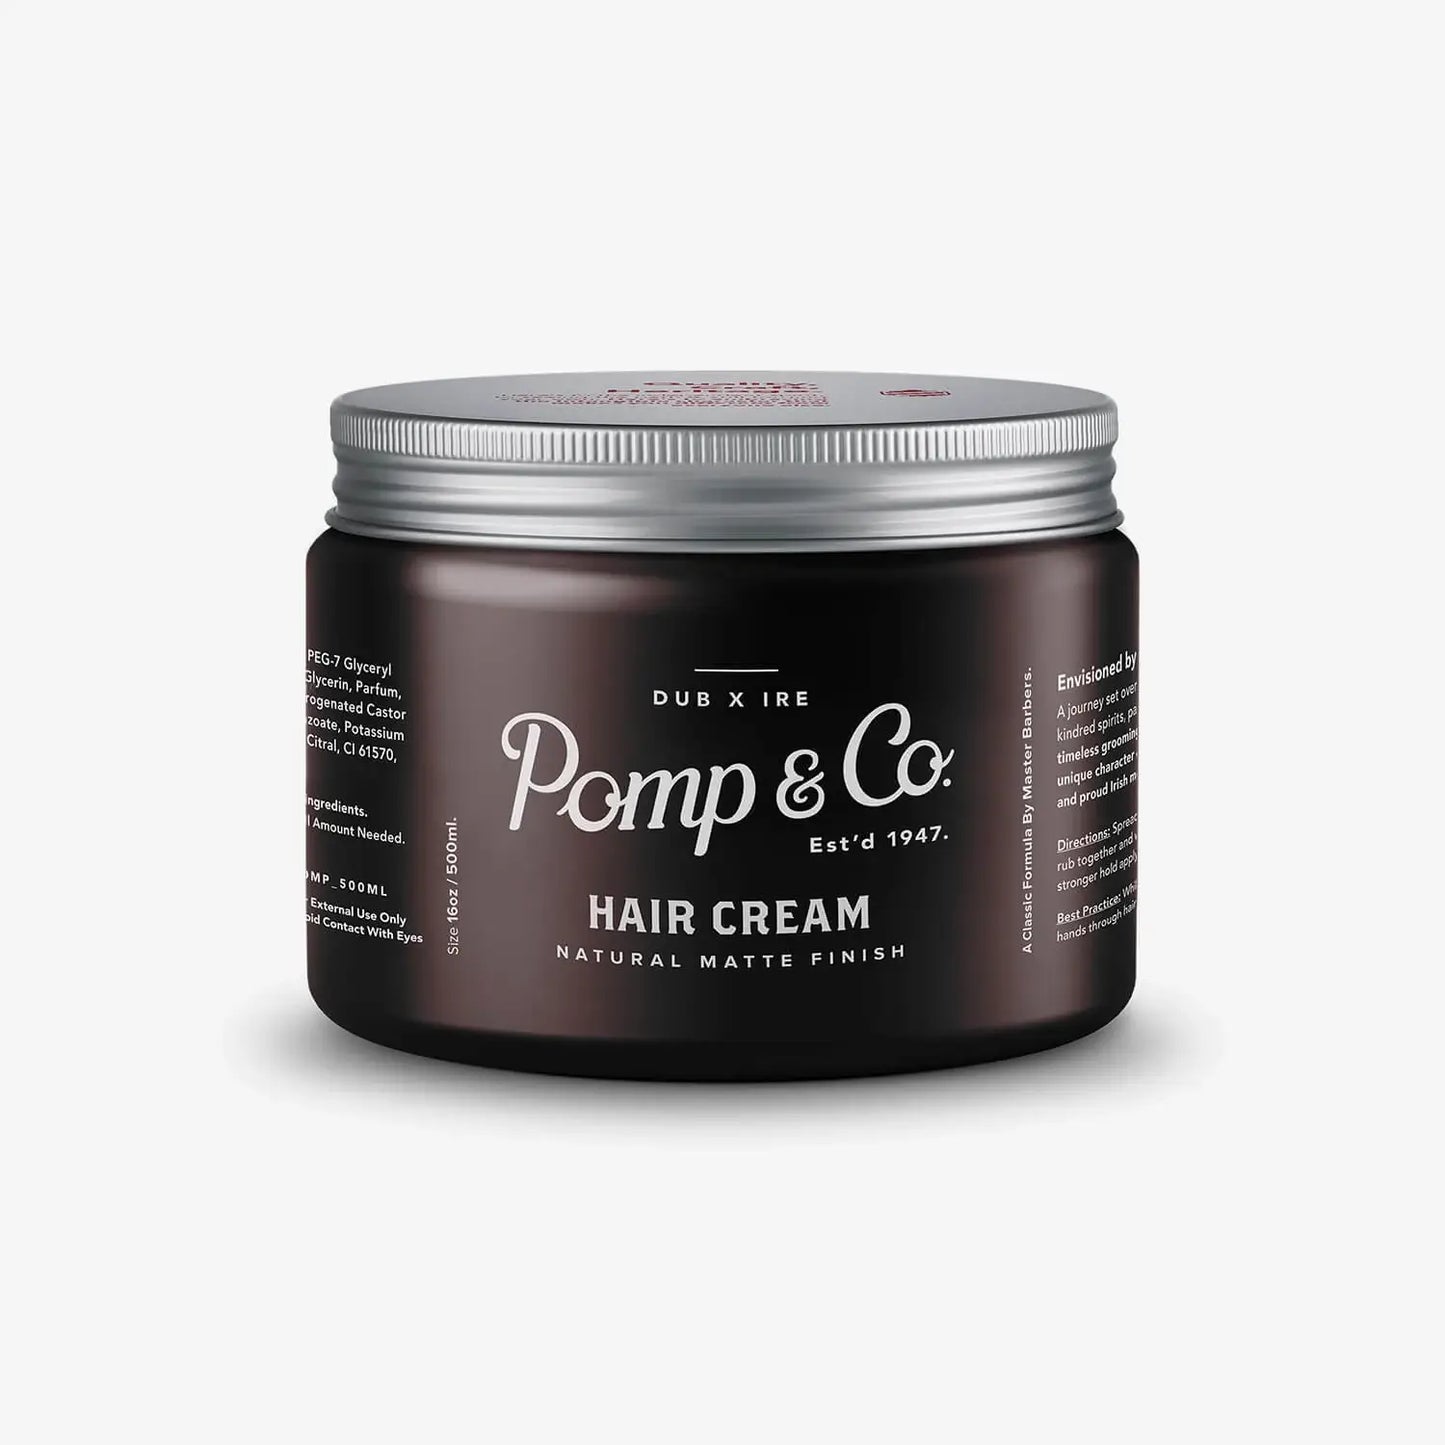 Pomp & Co Hair Cream 120ml / 500ml